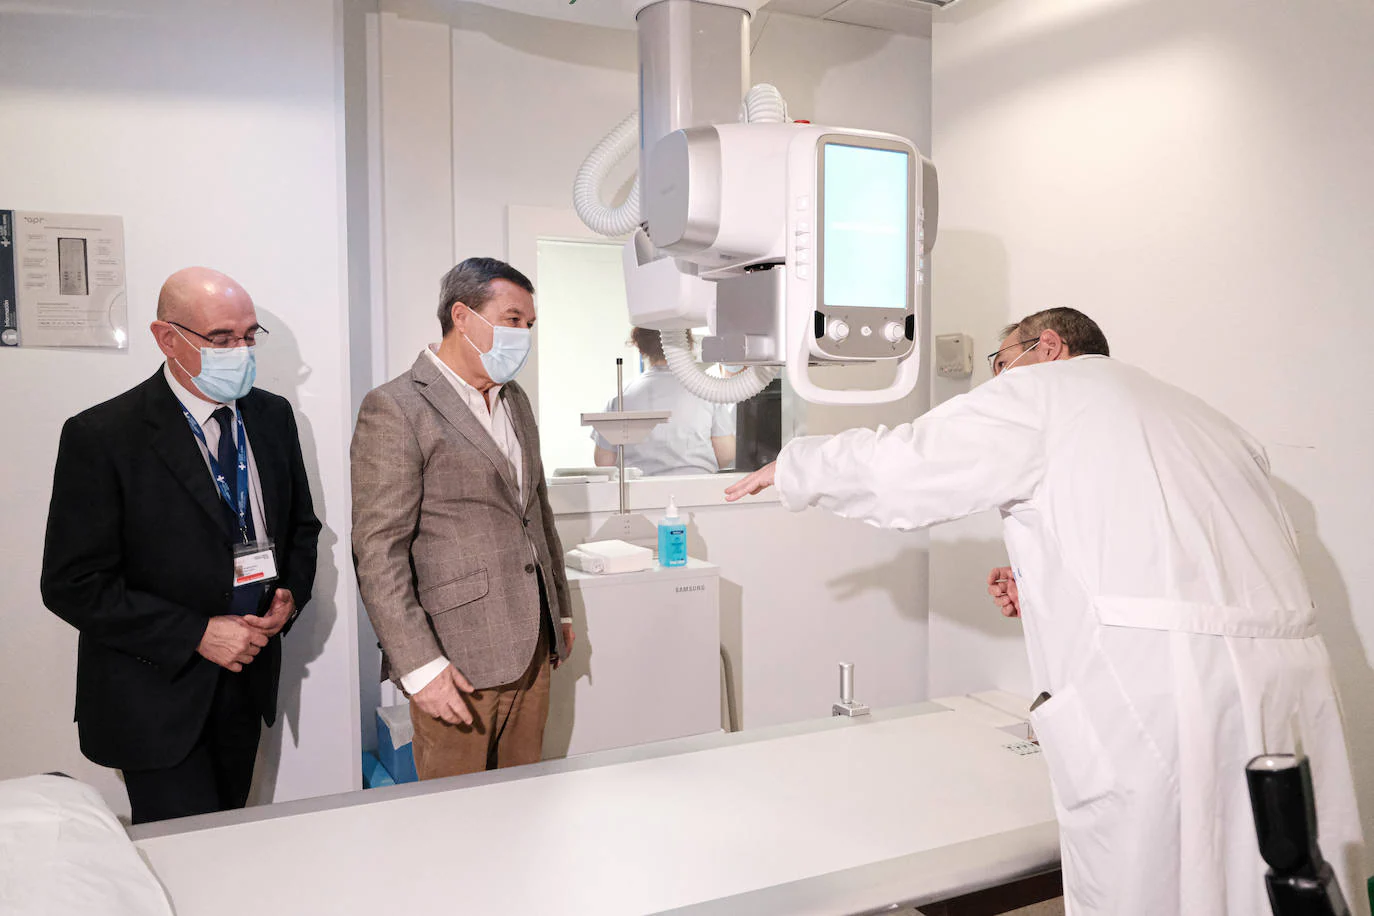 El Hospital de Alicante, pionero en radiología digital con IA para diagnósticos personalizados